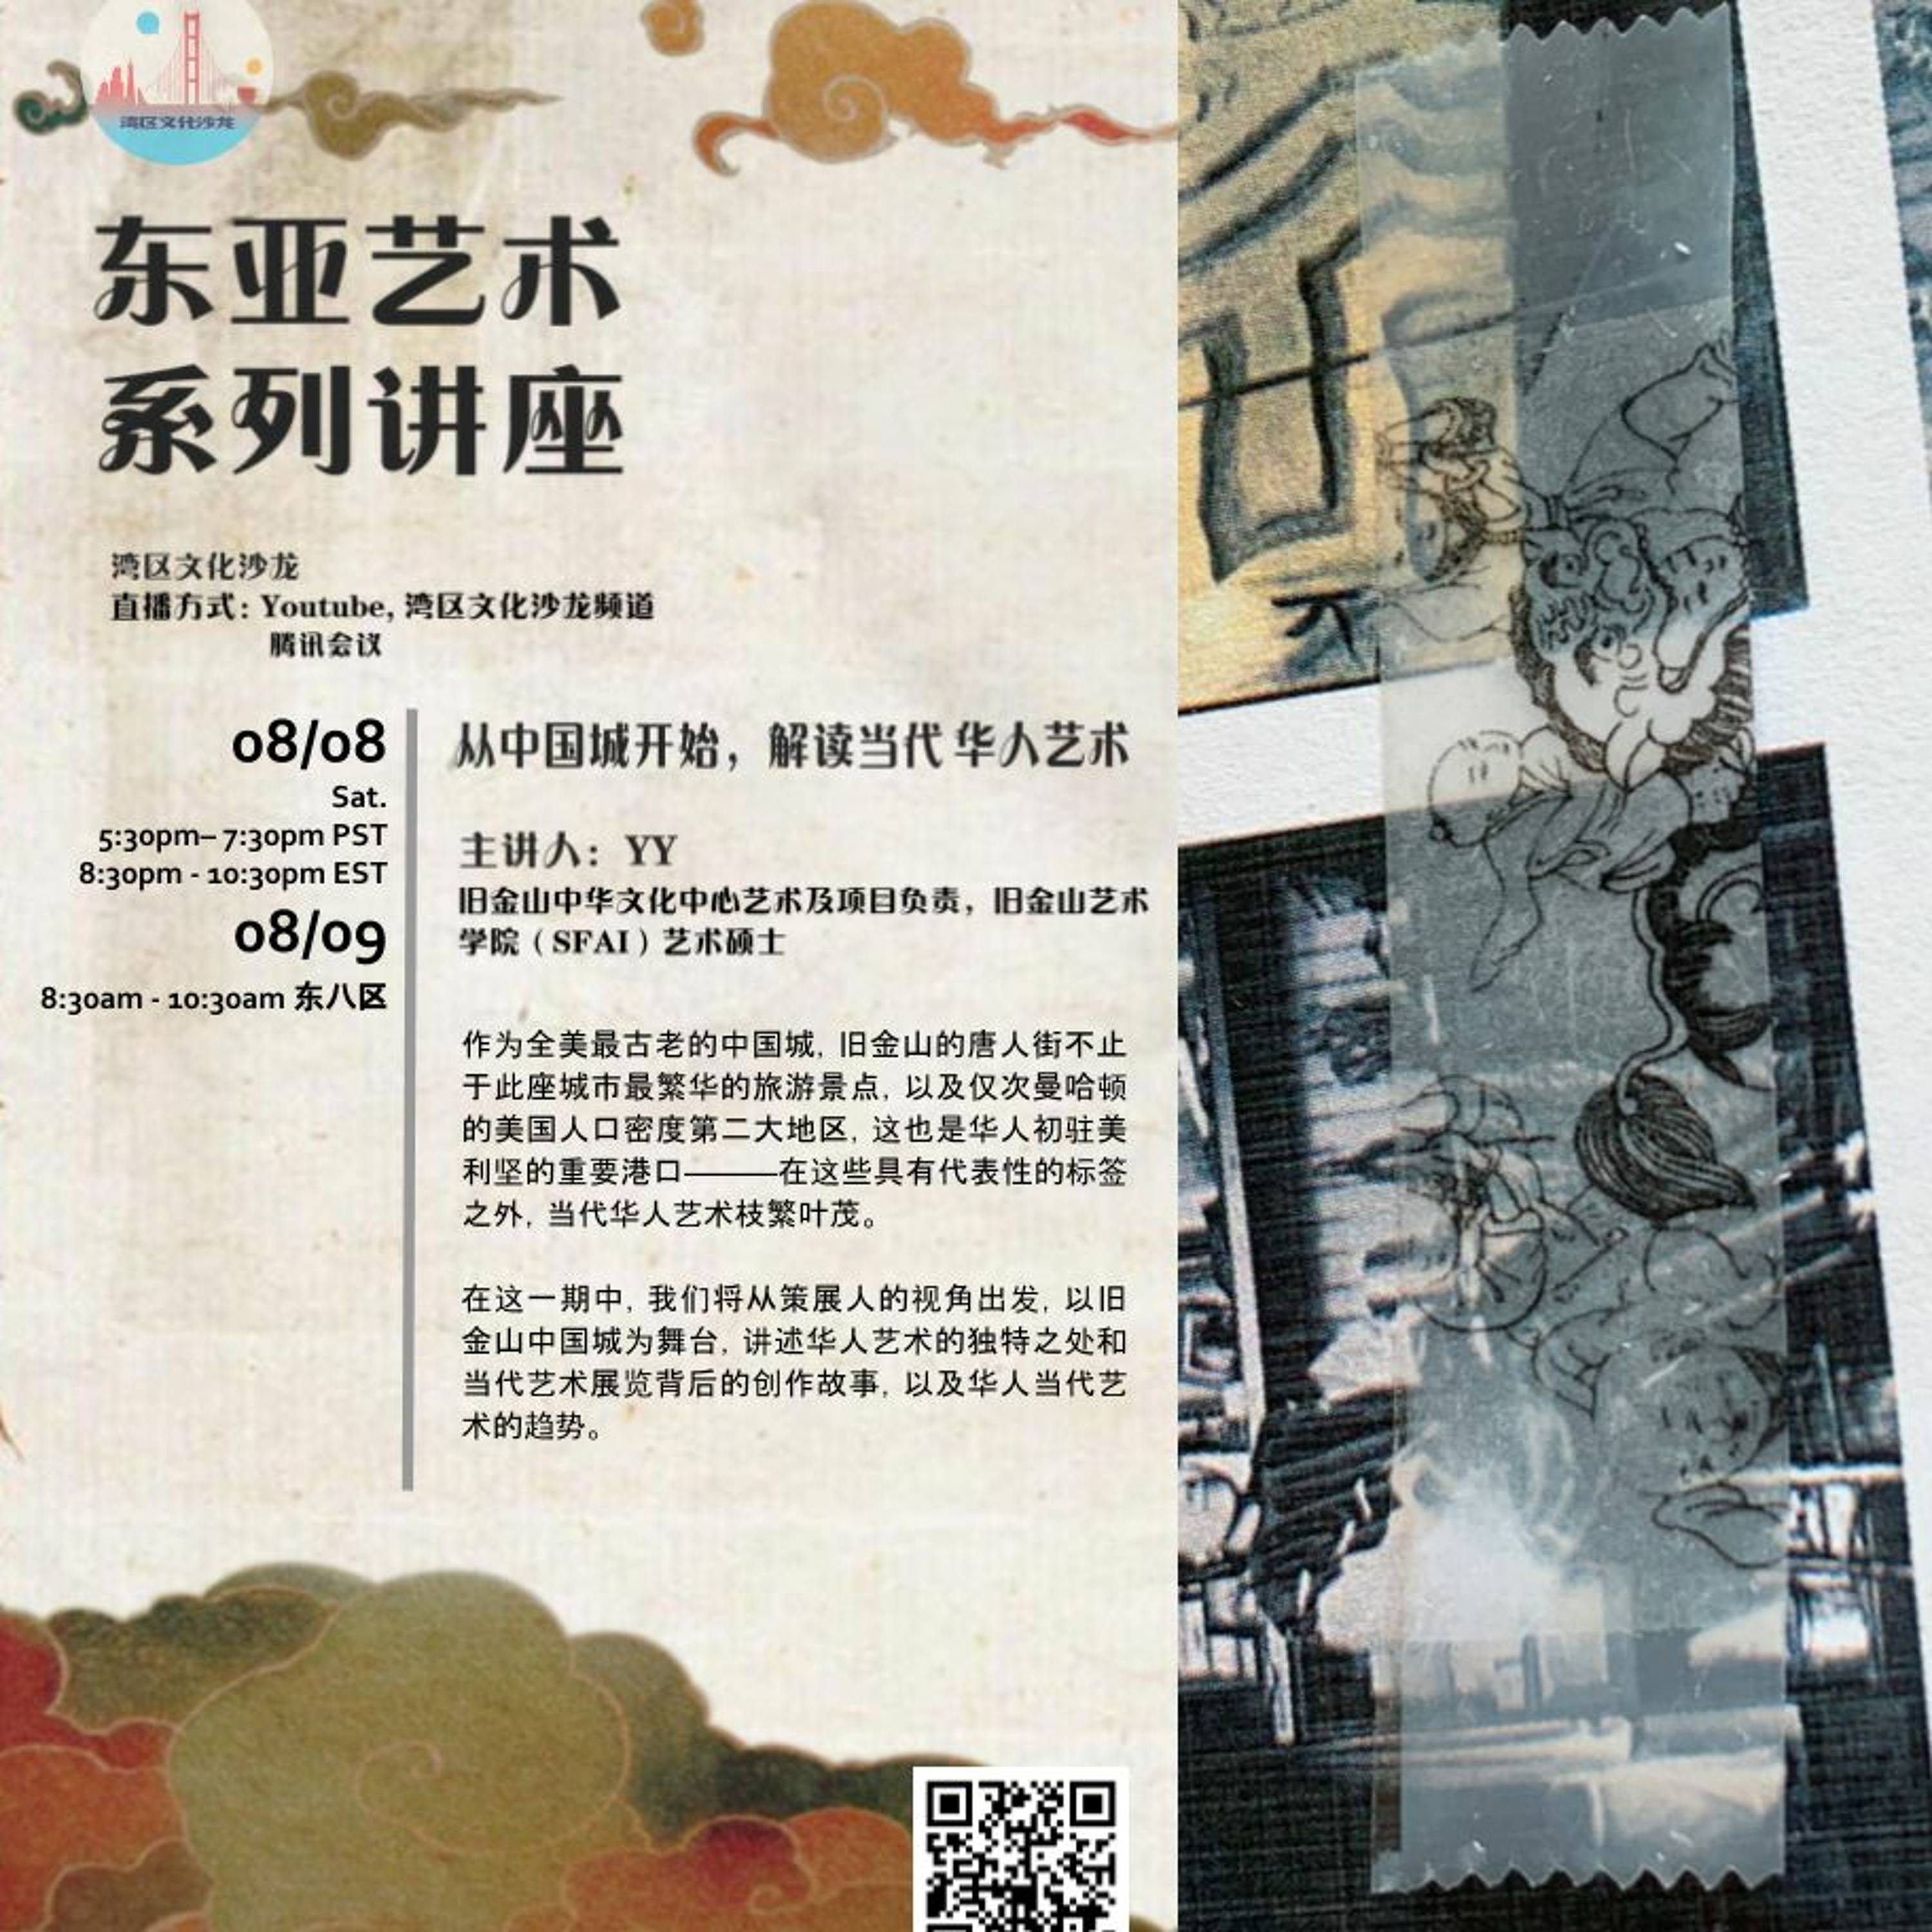 『线上艺术馆之东亚艺术系列第三期』从中国城开始，解读当代华人艺术